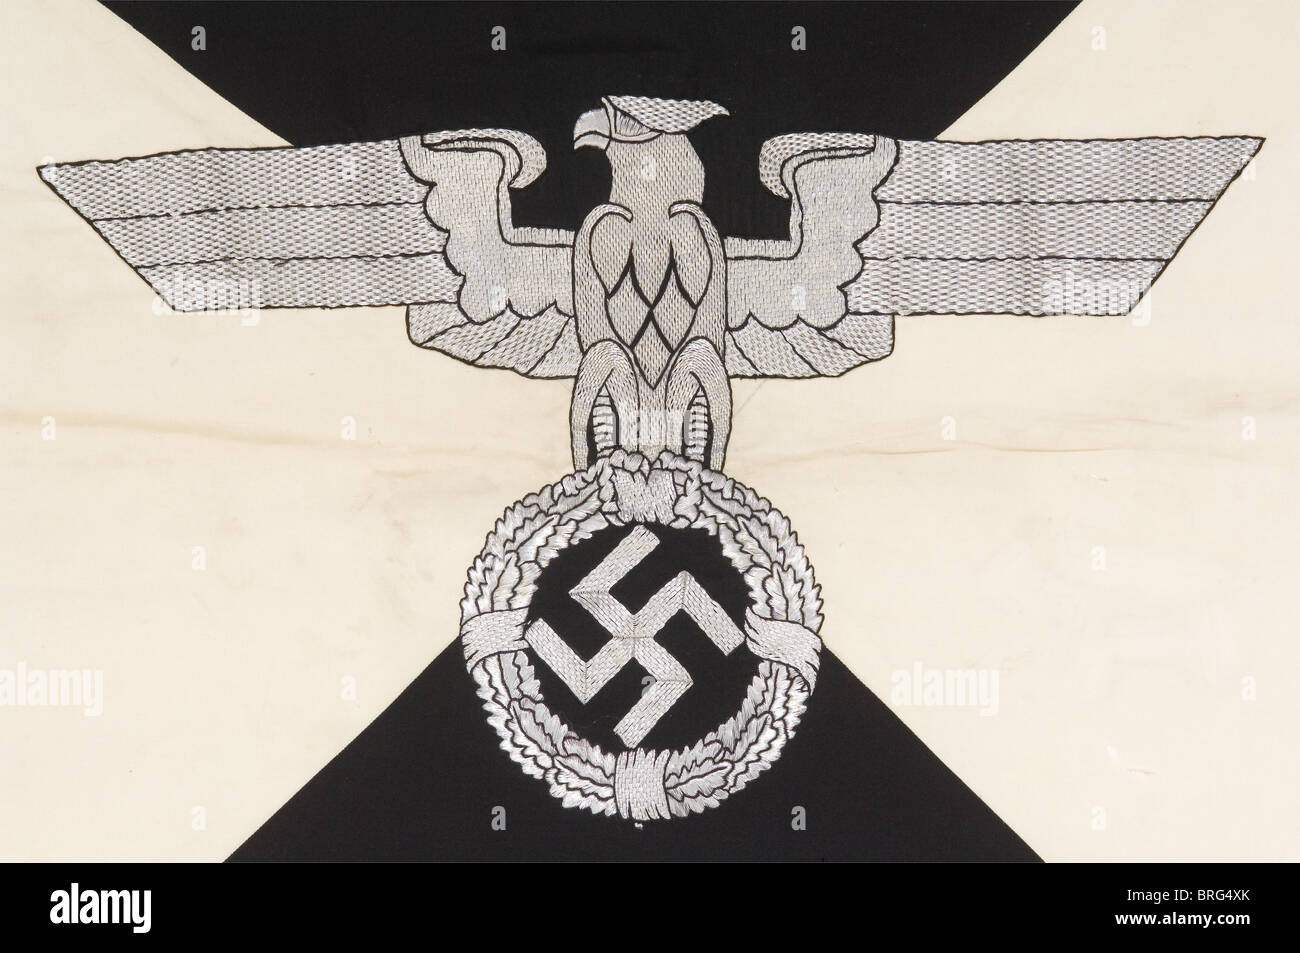 Heinrich Himmler,der persönliche Standard des Reichsführer SS Wolltuchs,geviertelt in schwarz und weiß,mit dem Adler in der Mitte,bestickt in silbernem Faden, Blick auf die heraldische linke.das doppelseitige Tuch,dazwischen gefüttert.90 x 90 cm.Offener Saum für den flagstaff.EIN paar Mottenlöcher,und der Stempel einer tschechischen Filmkostümabteilung auf dem HEM,aber zweifellos ein zeitgenössisches Stück.EINE zeitgenössische Fotografie bestätigt das unterschiedliche Aussehen des Adlers von dem des SS-Adlers, wie es sonst üblich ist.von sehr großer Seltenheit.Bisher hat kein anderes Beispiel,Additional-Rights-Clearences-nicht verfügbar Stockfoto